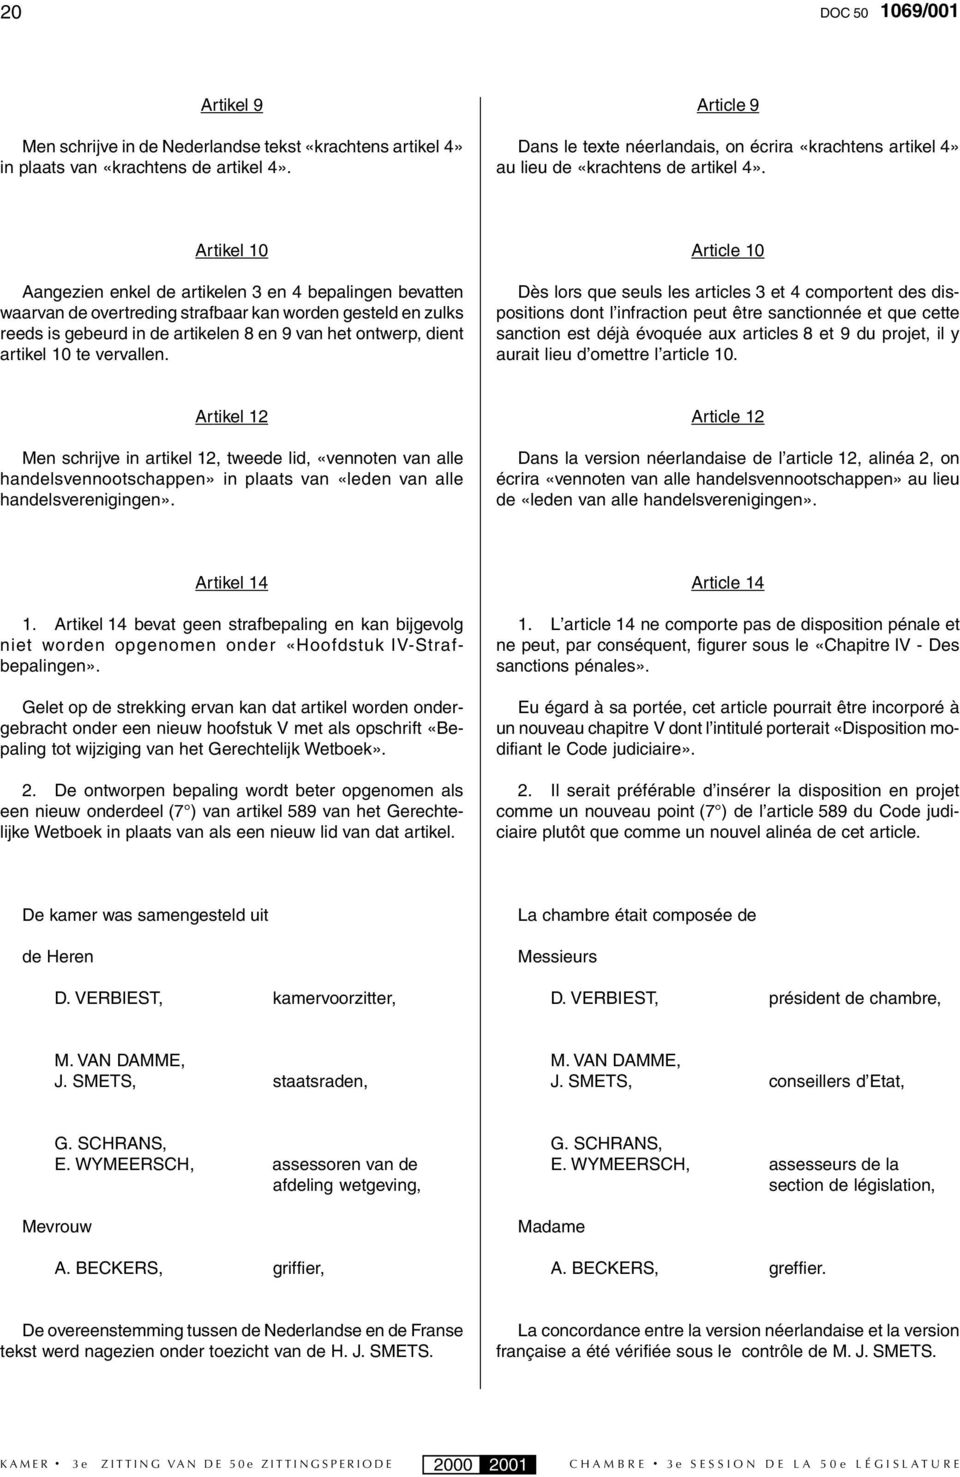 Artikel 10 Aangezien enkel de artikelen 3 en 4 bepalingen bevatten waarvan de overtreding strafbaar kan worden gesteld en zulks reeds is gebeurd in de artikelen 8 en 9 van het ontwerp, dient artikel